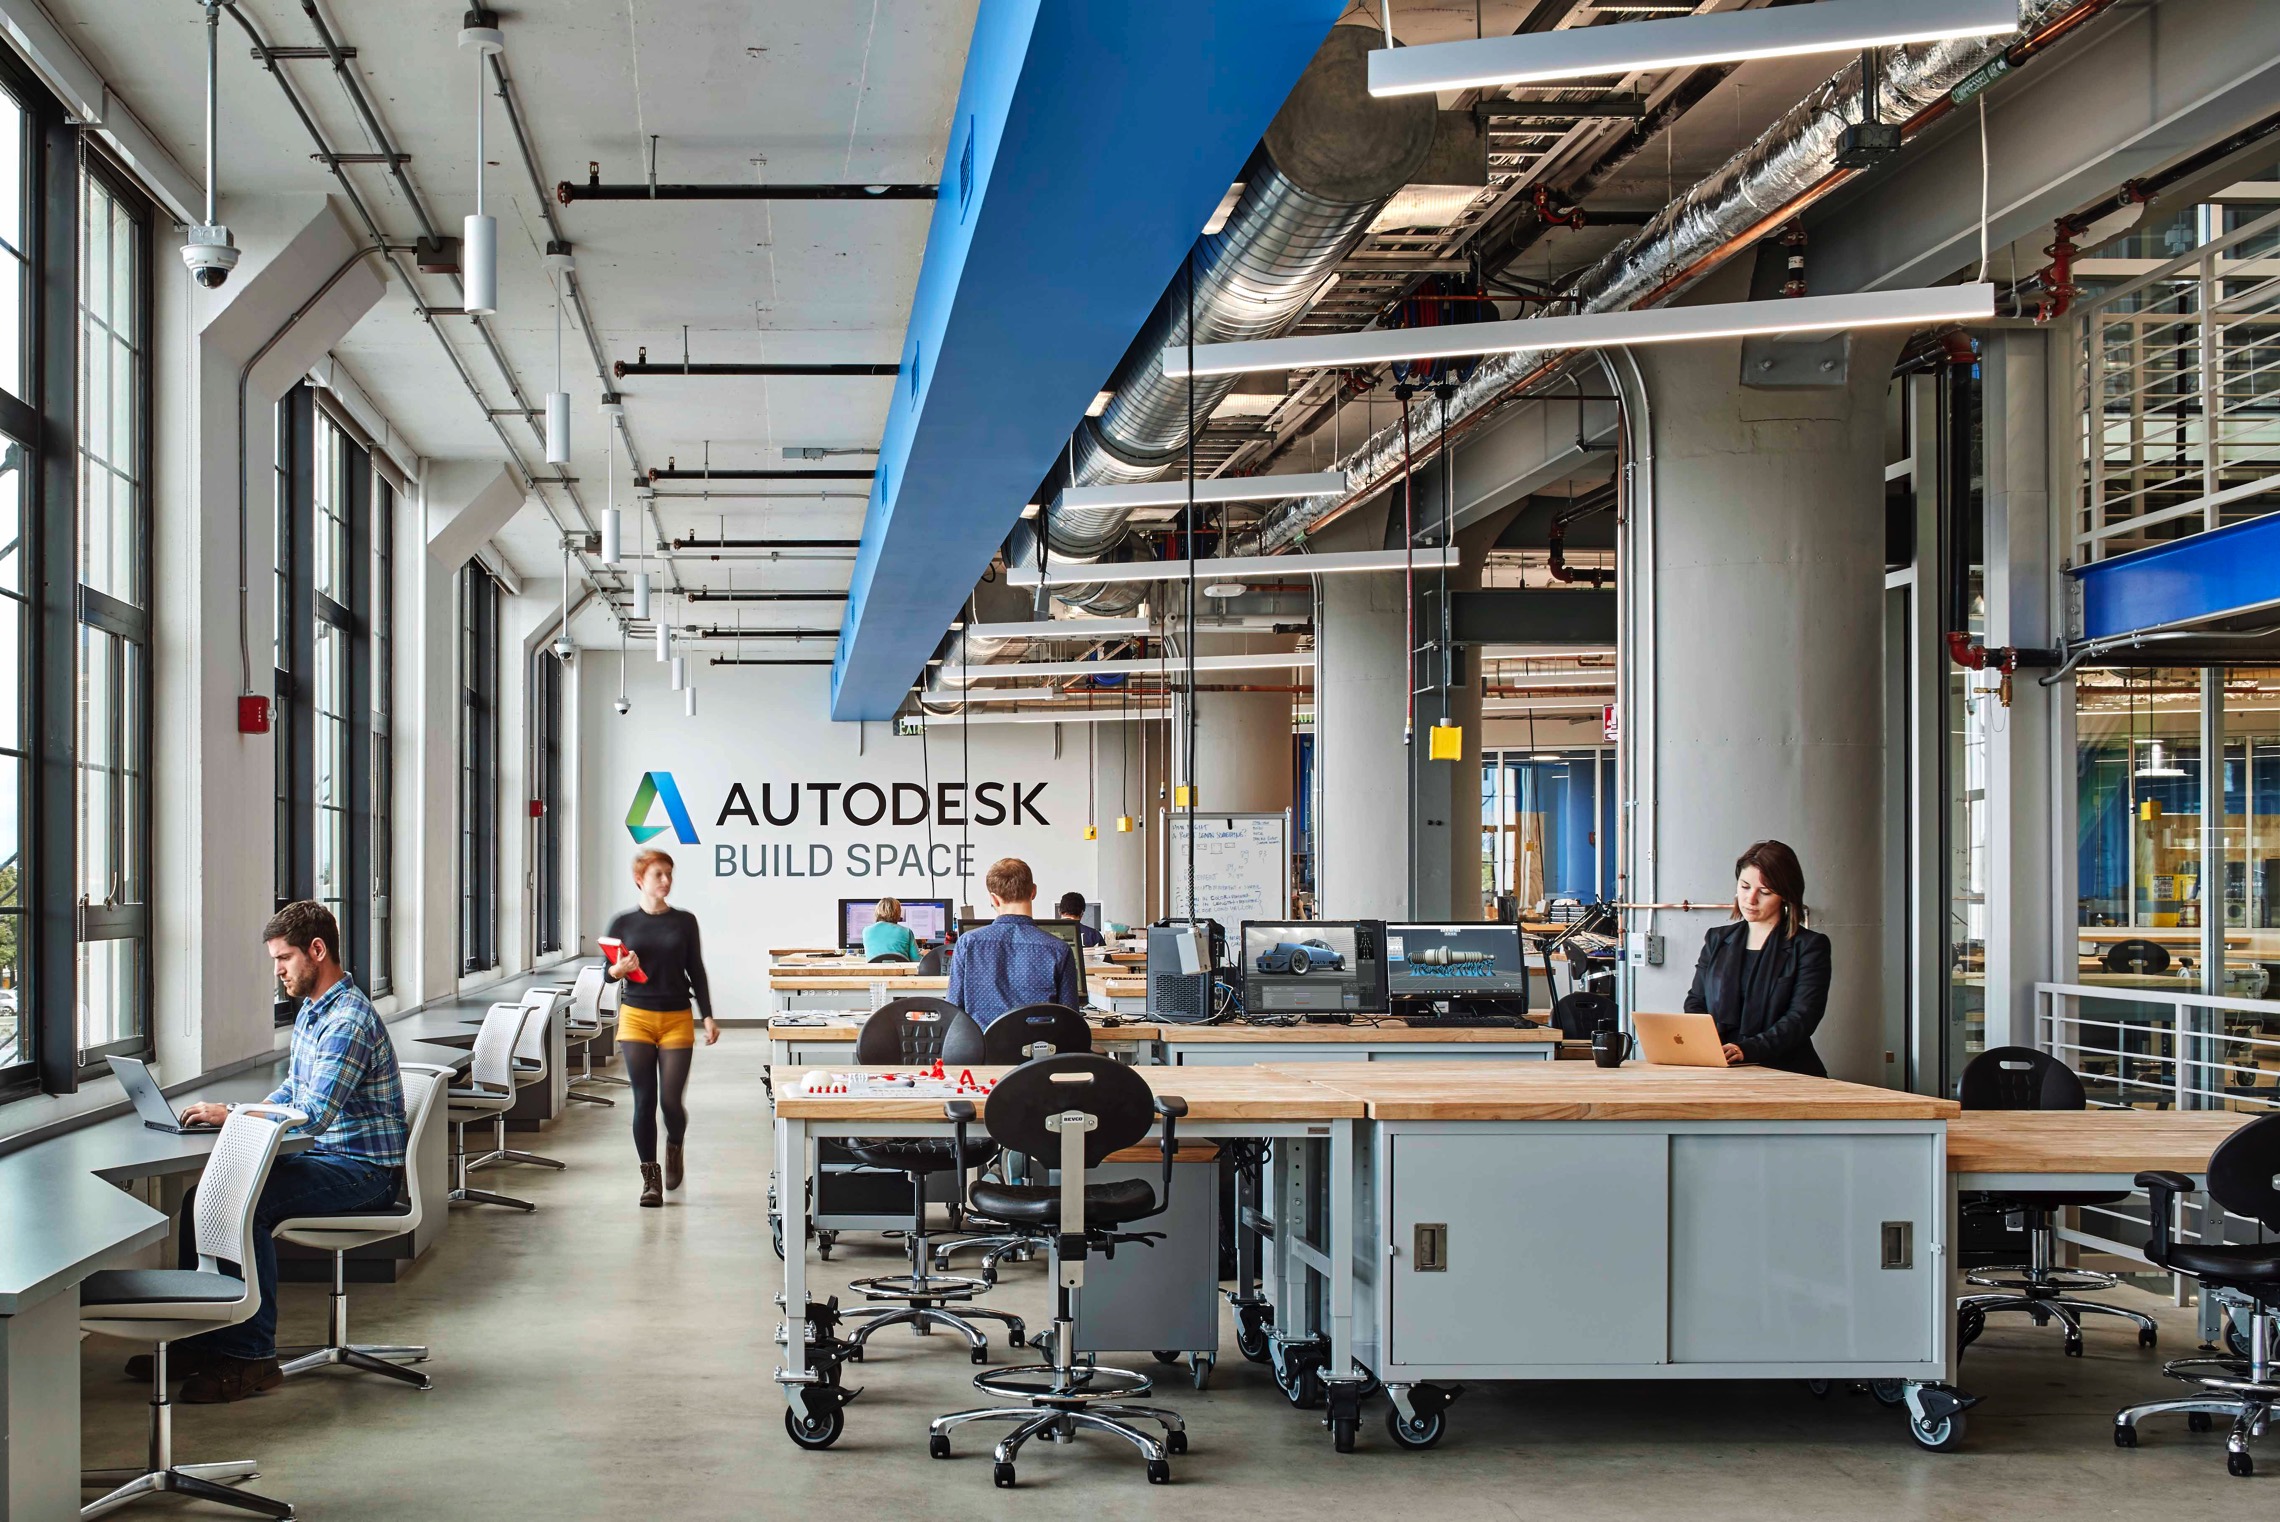 Autodesk, Boston - Office Inspiration